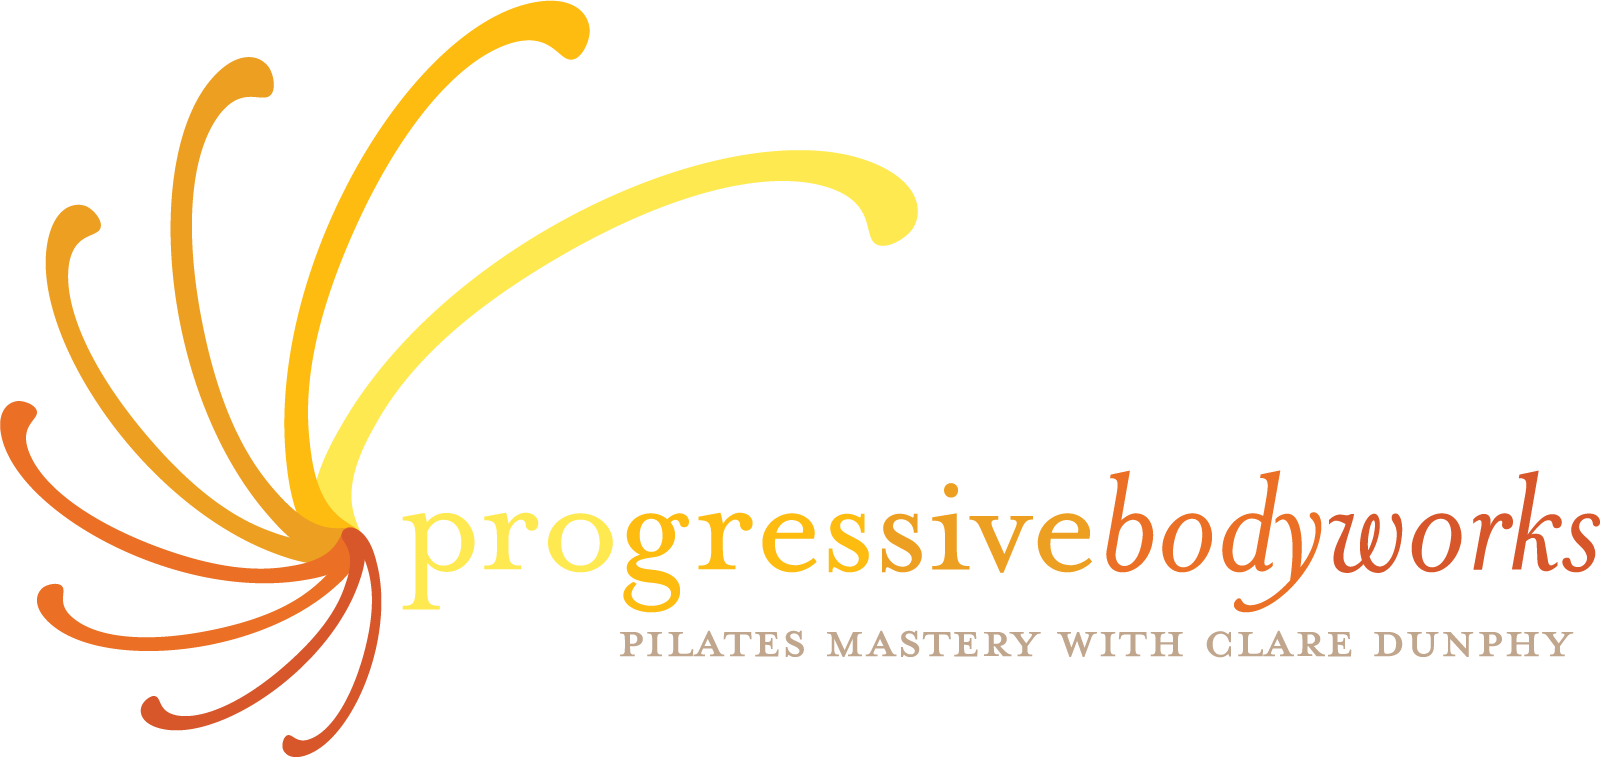 Progressive Bodyworks Studio | progressivebodyworksinc.com